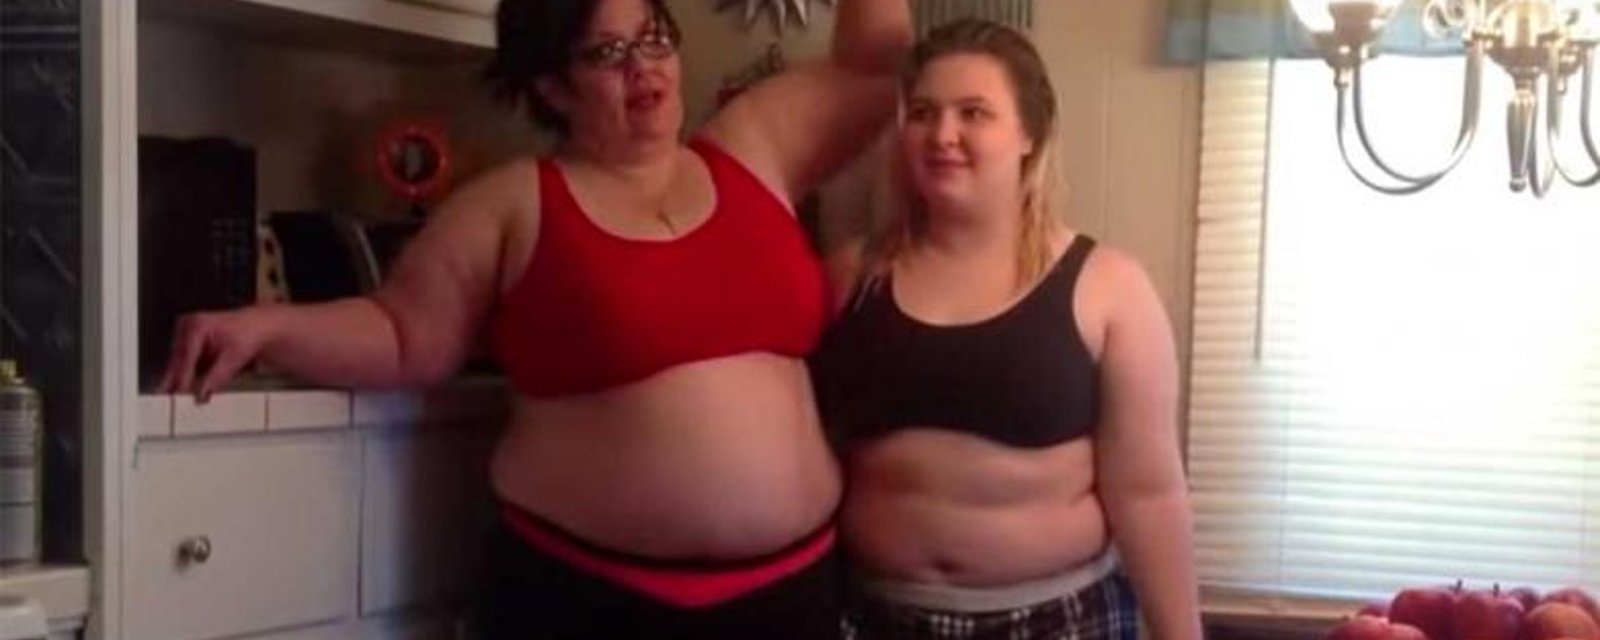 Avant de perdre du poids, cette maman et sa fille se filment... Aujourd'hui, elles sont méconnaissables!